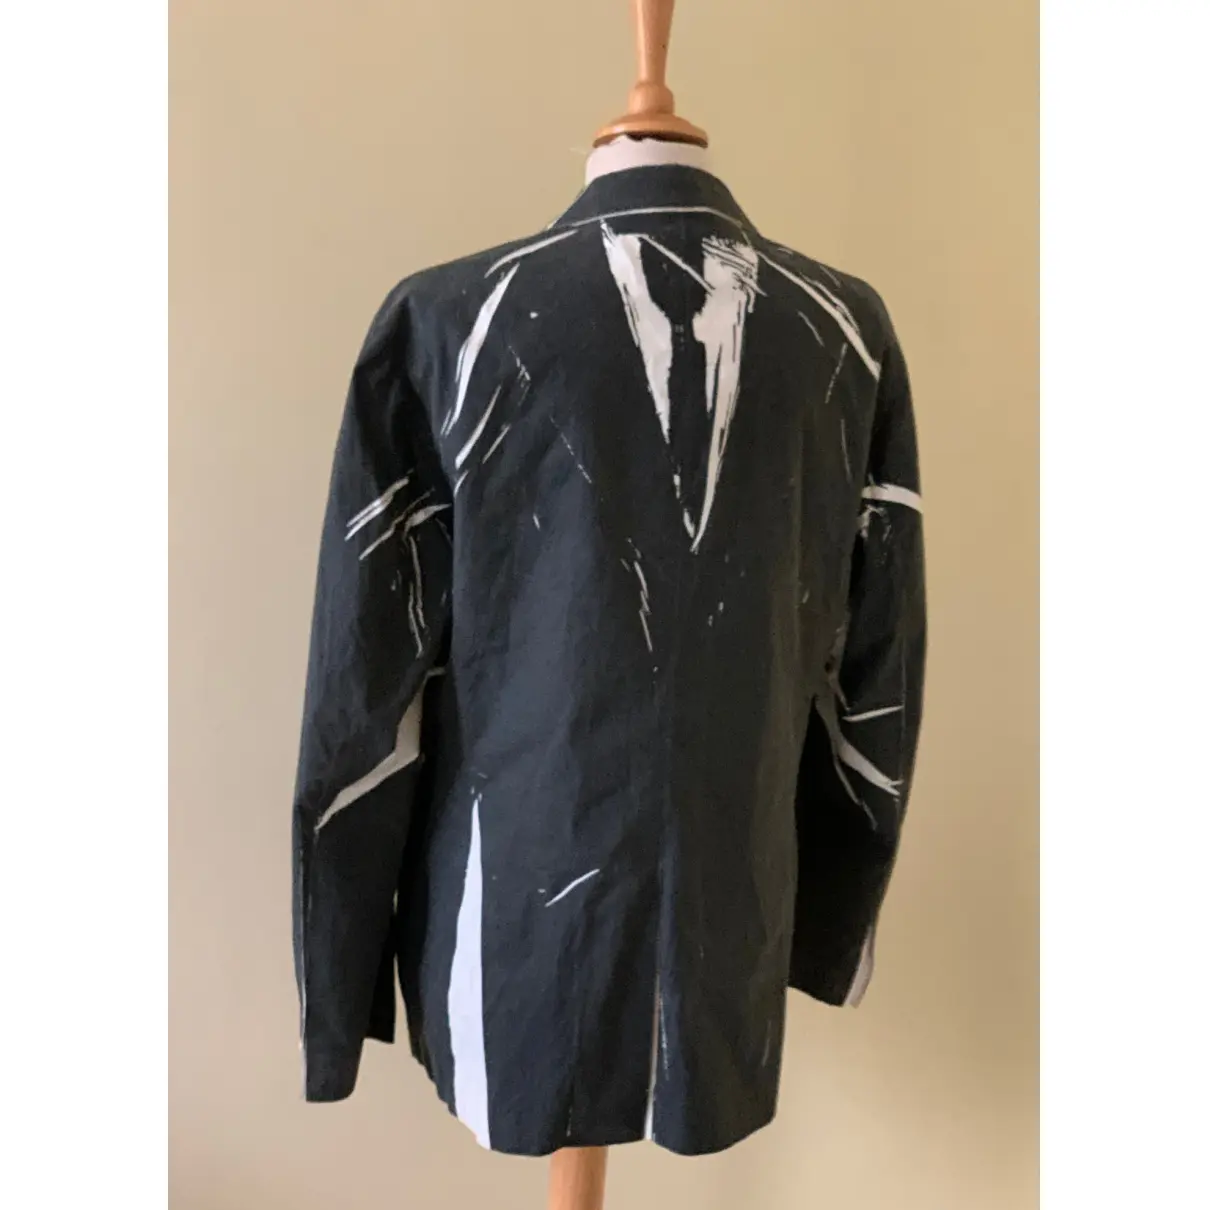 Buy Kenzo Suit online